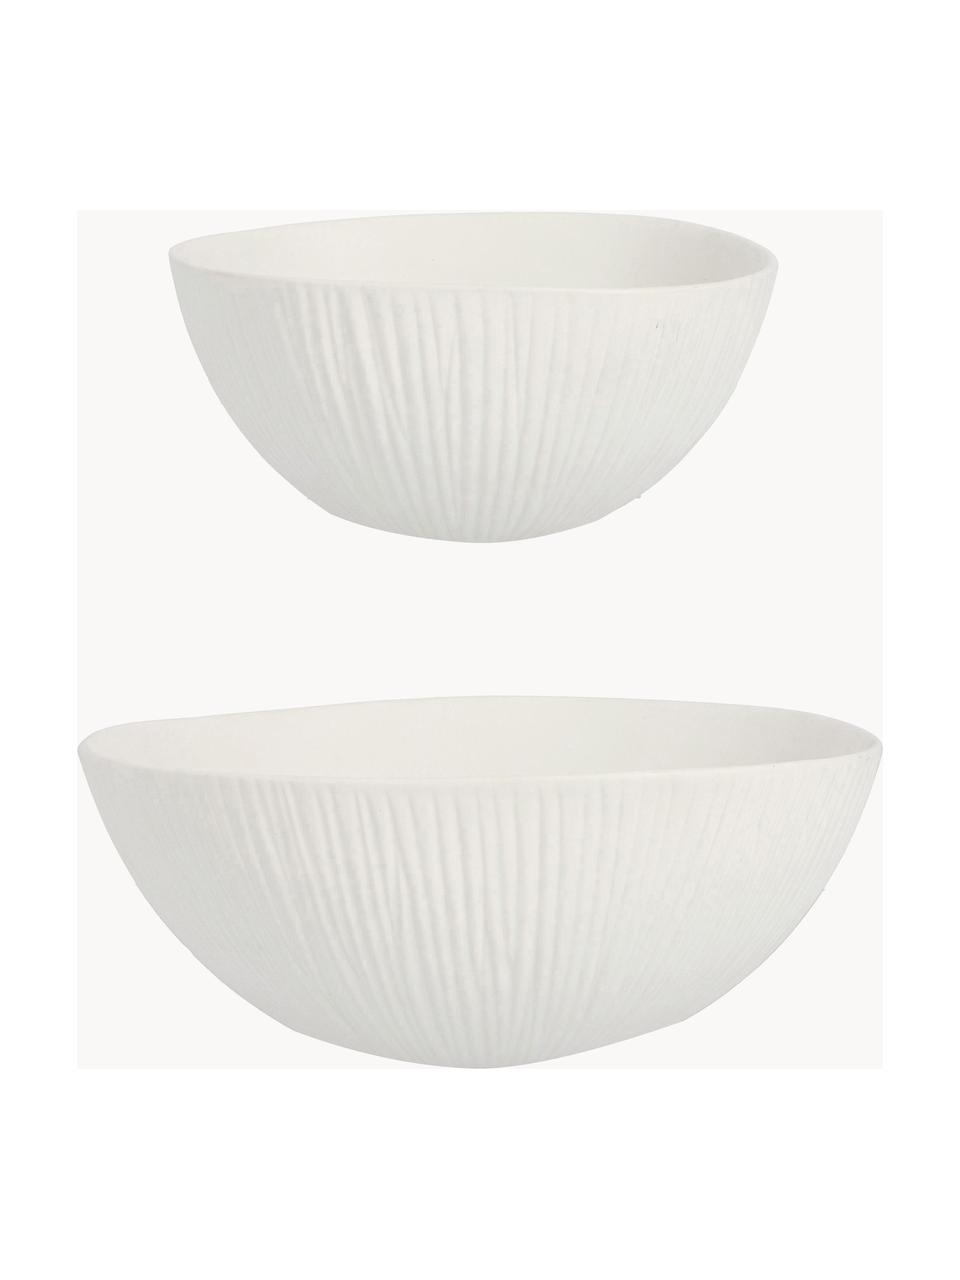 Keramik-Dekoschalen Striped, 2er-Set, Keramik, Weiß, Set mit verschiedenen Größen